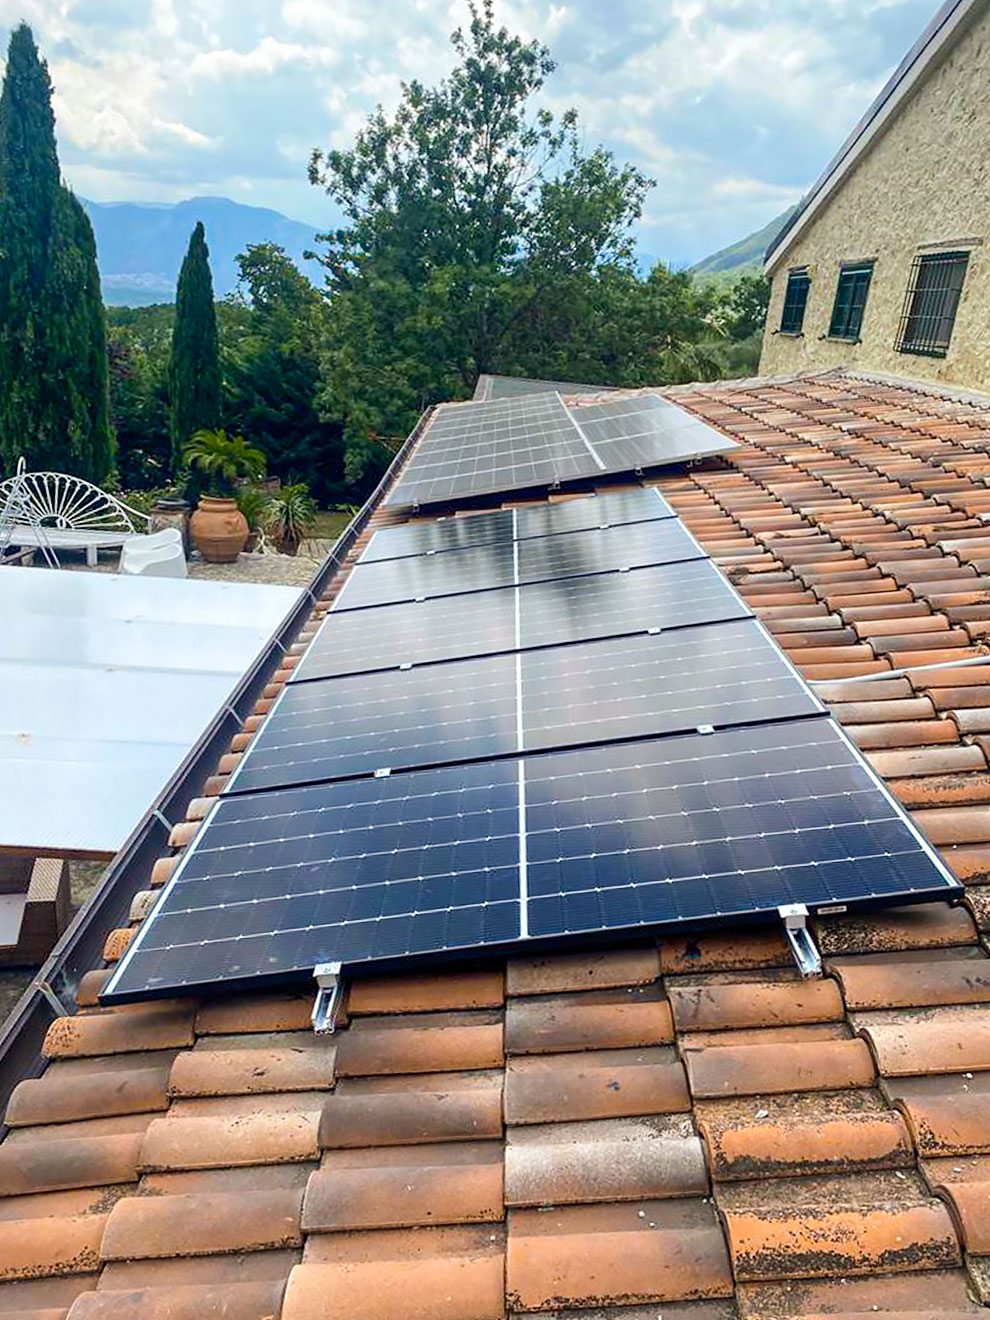 Impianto Fotovoltaico 2 kWp con 5kWh di accumulo Capriati al Volturno, Caserta dmt solar impianti fotovoltaici partner tesla, maxeon sunpower, solaredge